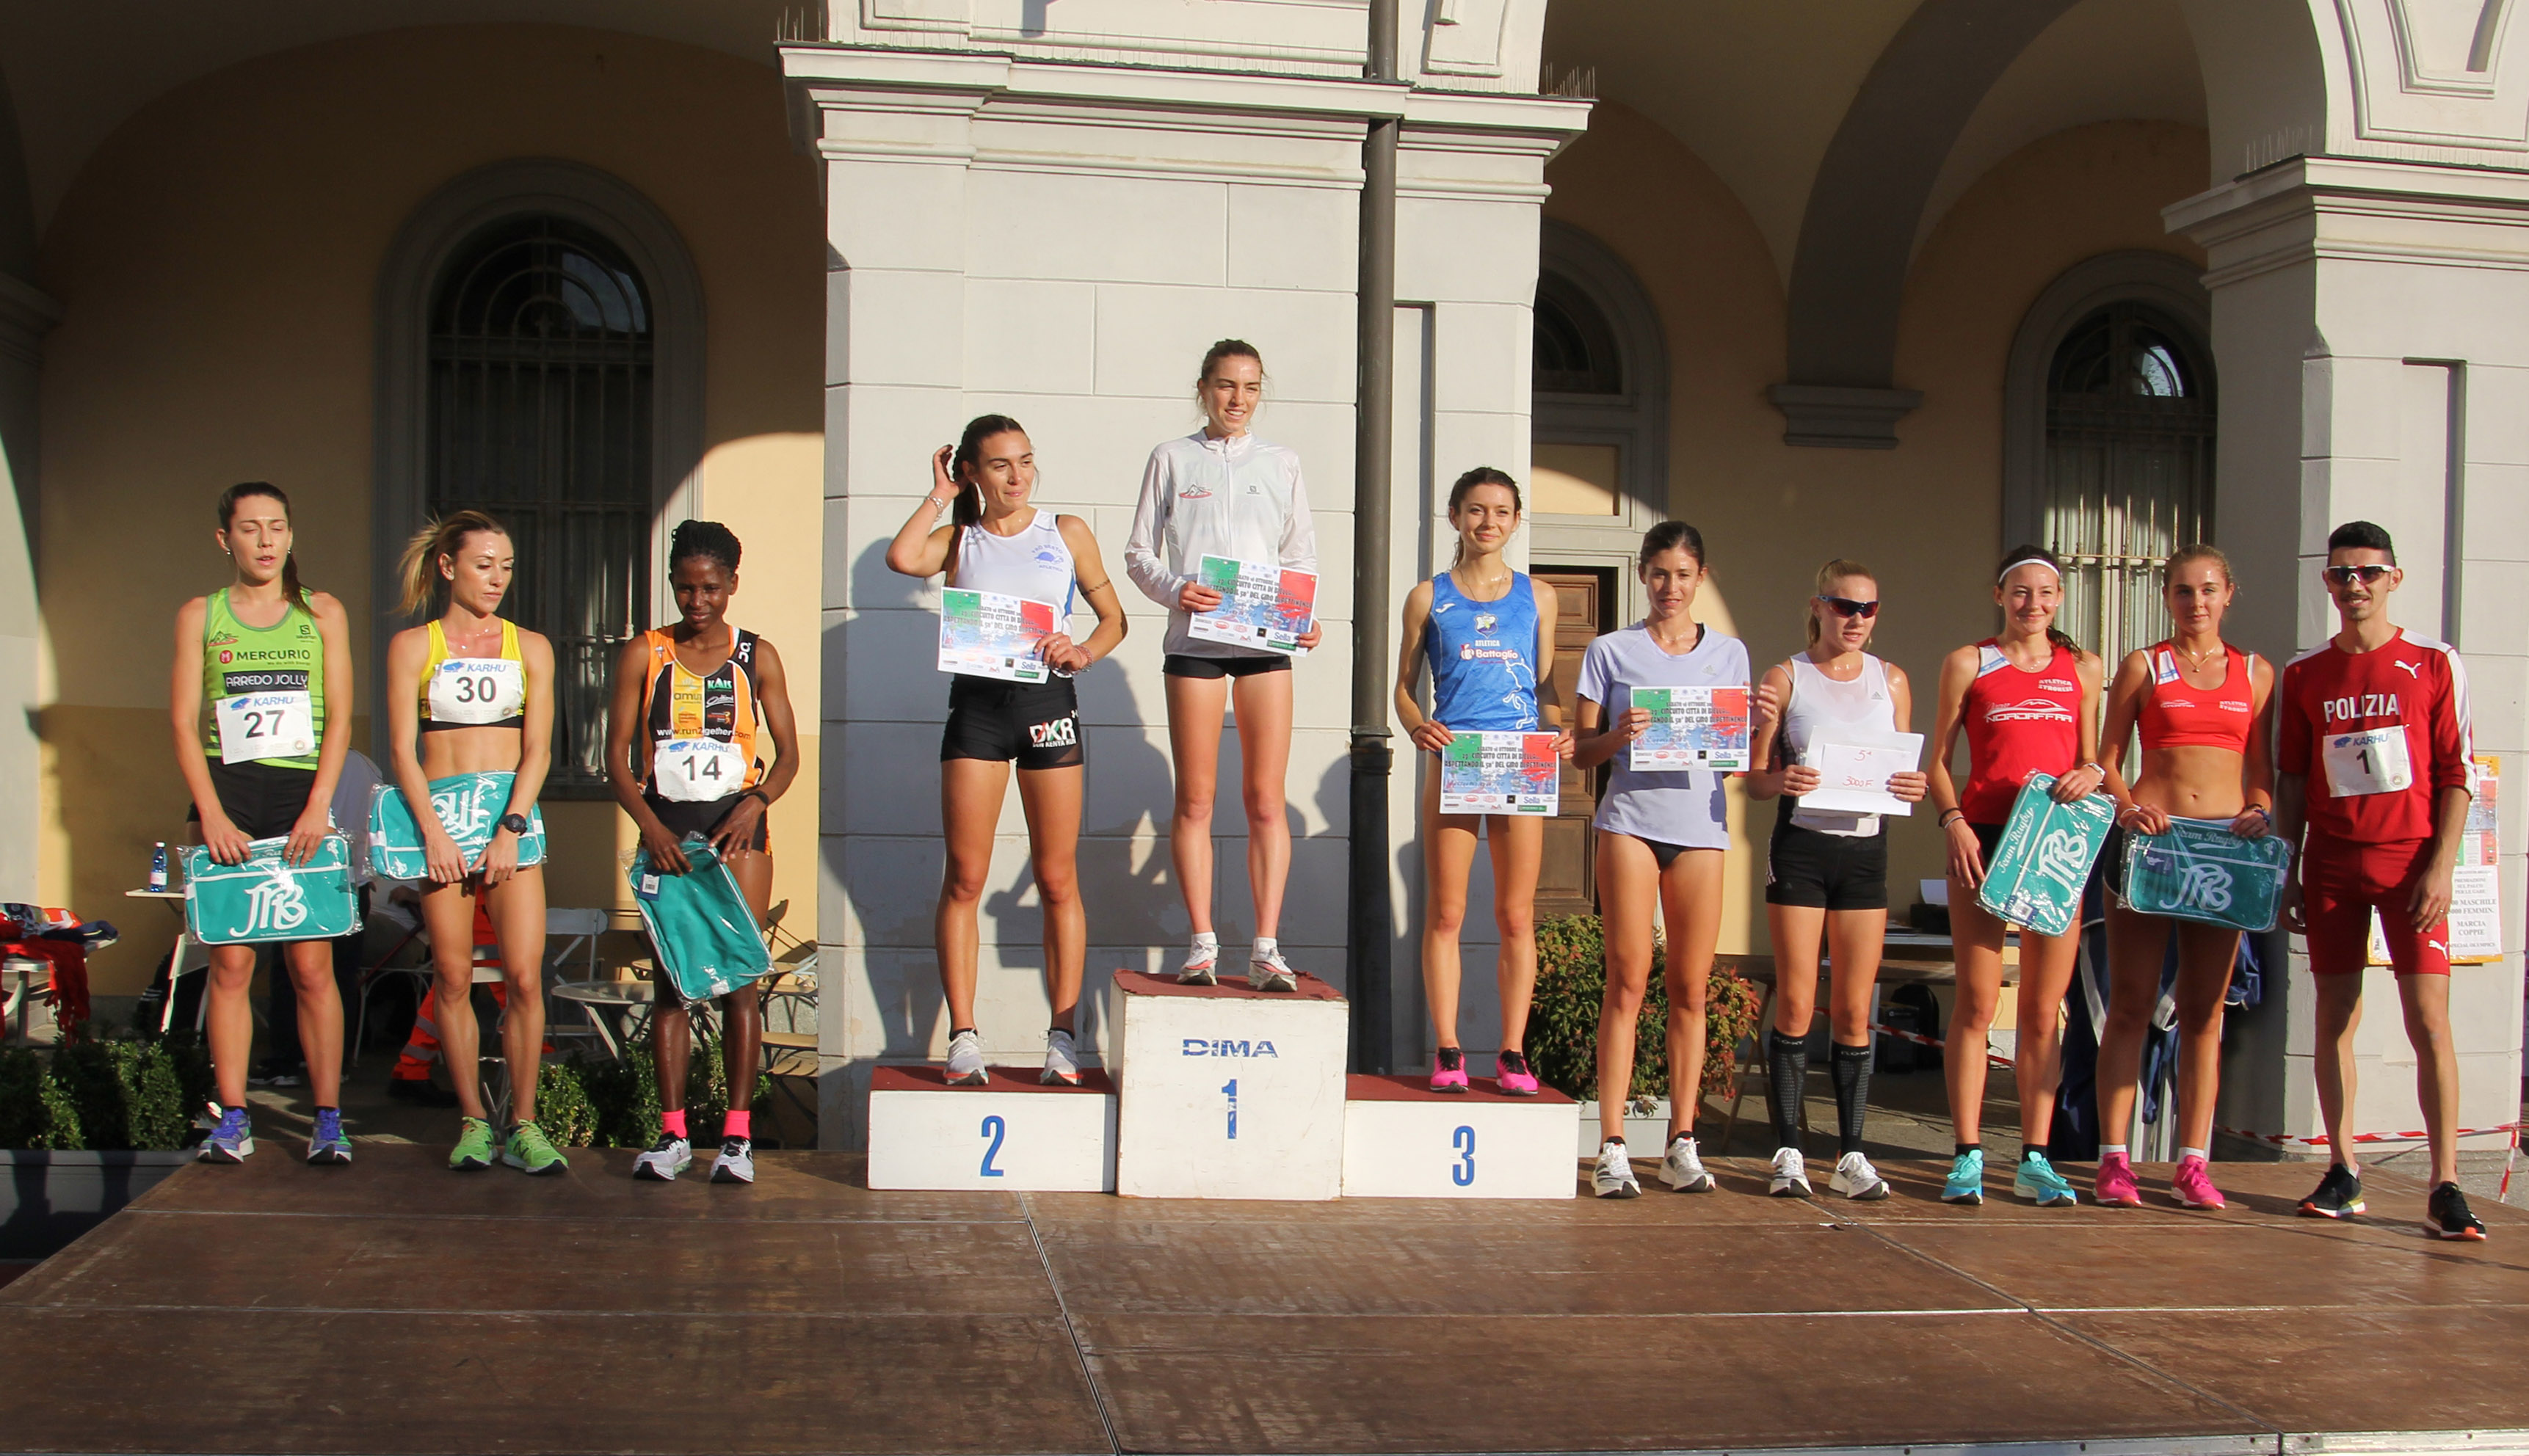 La premiazione della gara dei 3000 metri femminili del circuito città di Biella